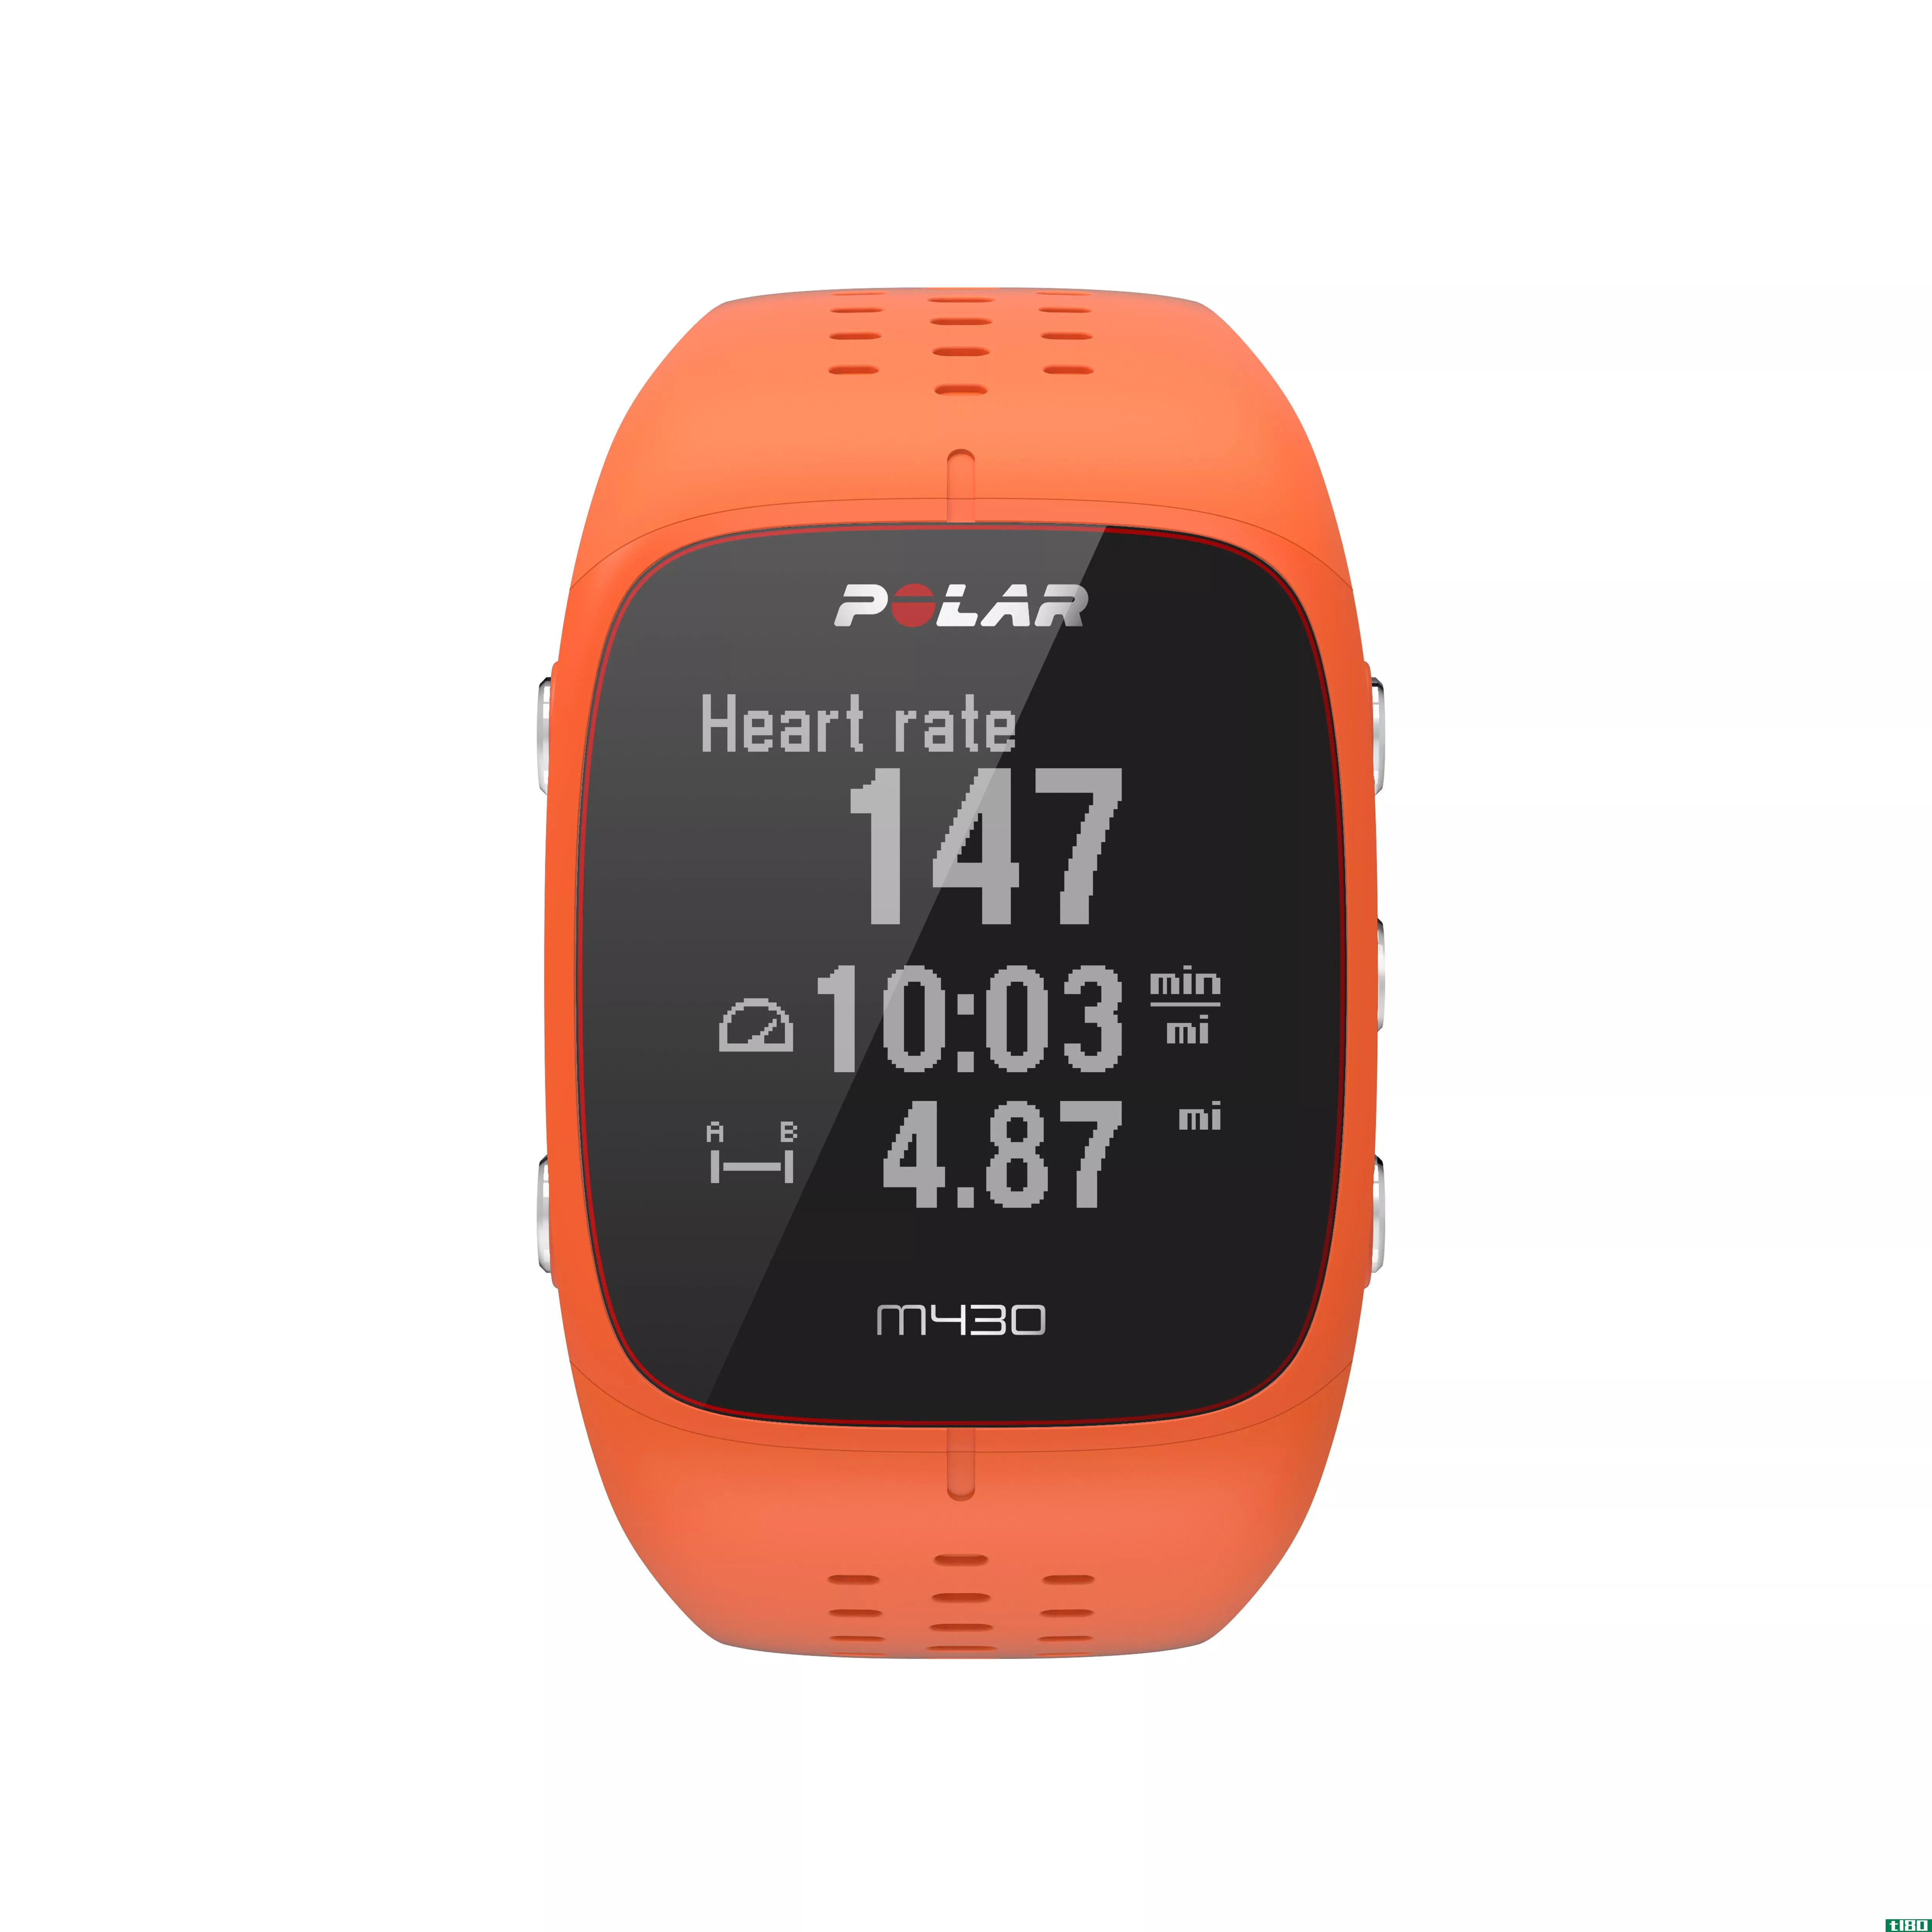 polar新推出的m430旗舰跑步手表具有基于腕表的心率传感器